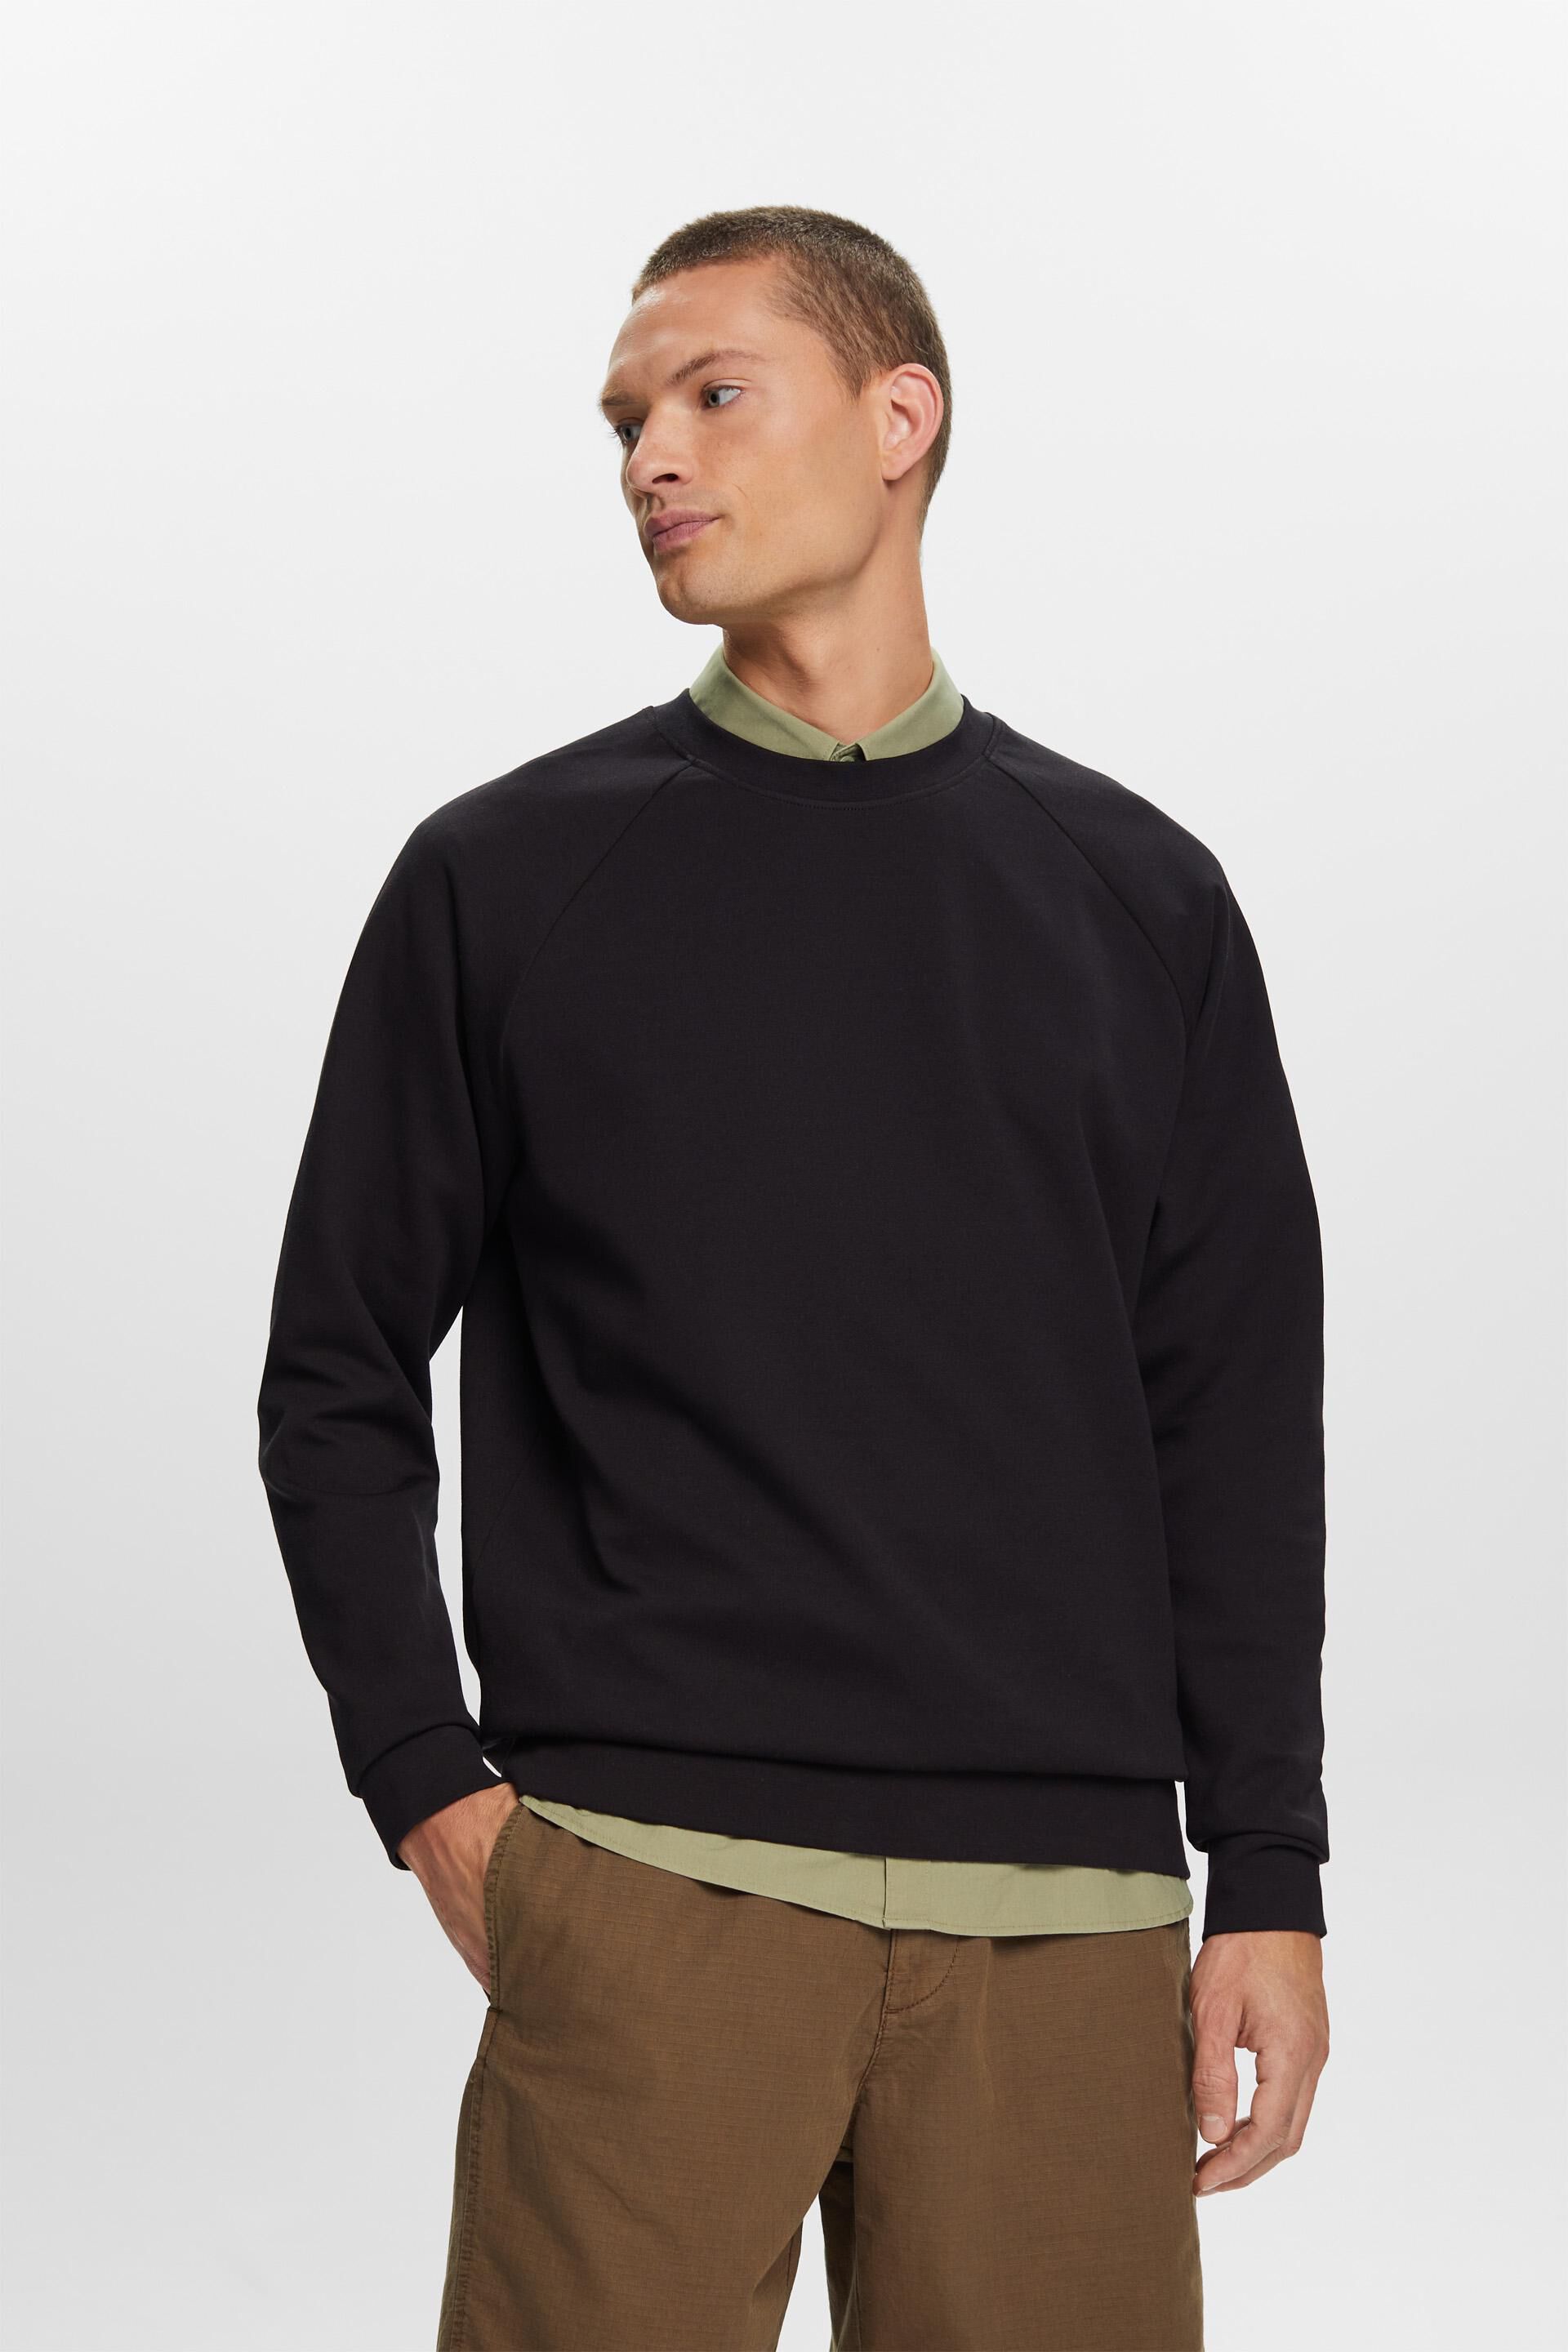 Esprit cotton Basic sweatshirt, blend